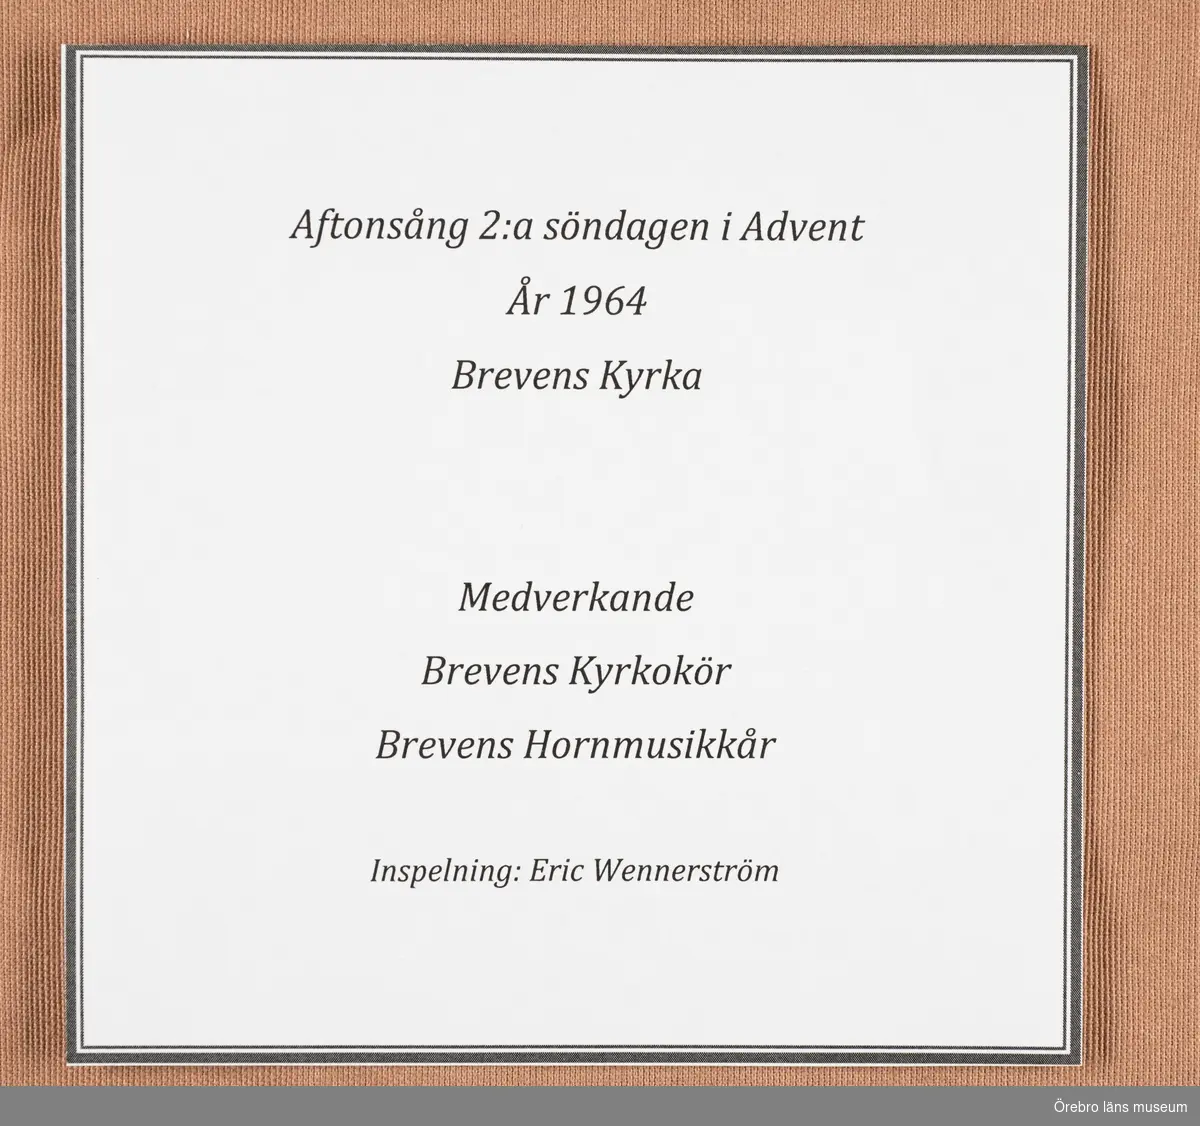 Aftonsång 2:a söndagen i Advent år 1964 i Brevens kyrka
Medverkande

Brevens Kyrkokör, Brevens Hornmusikkår.
Inspelning Eric Wennerström.